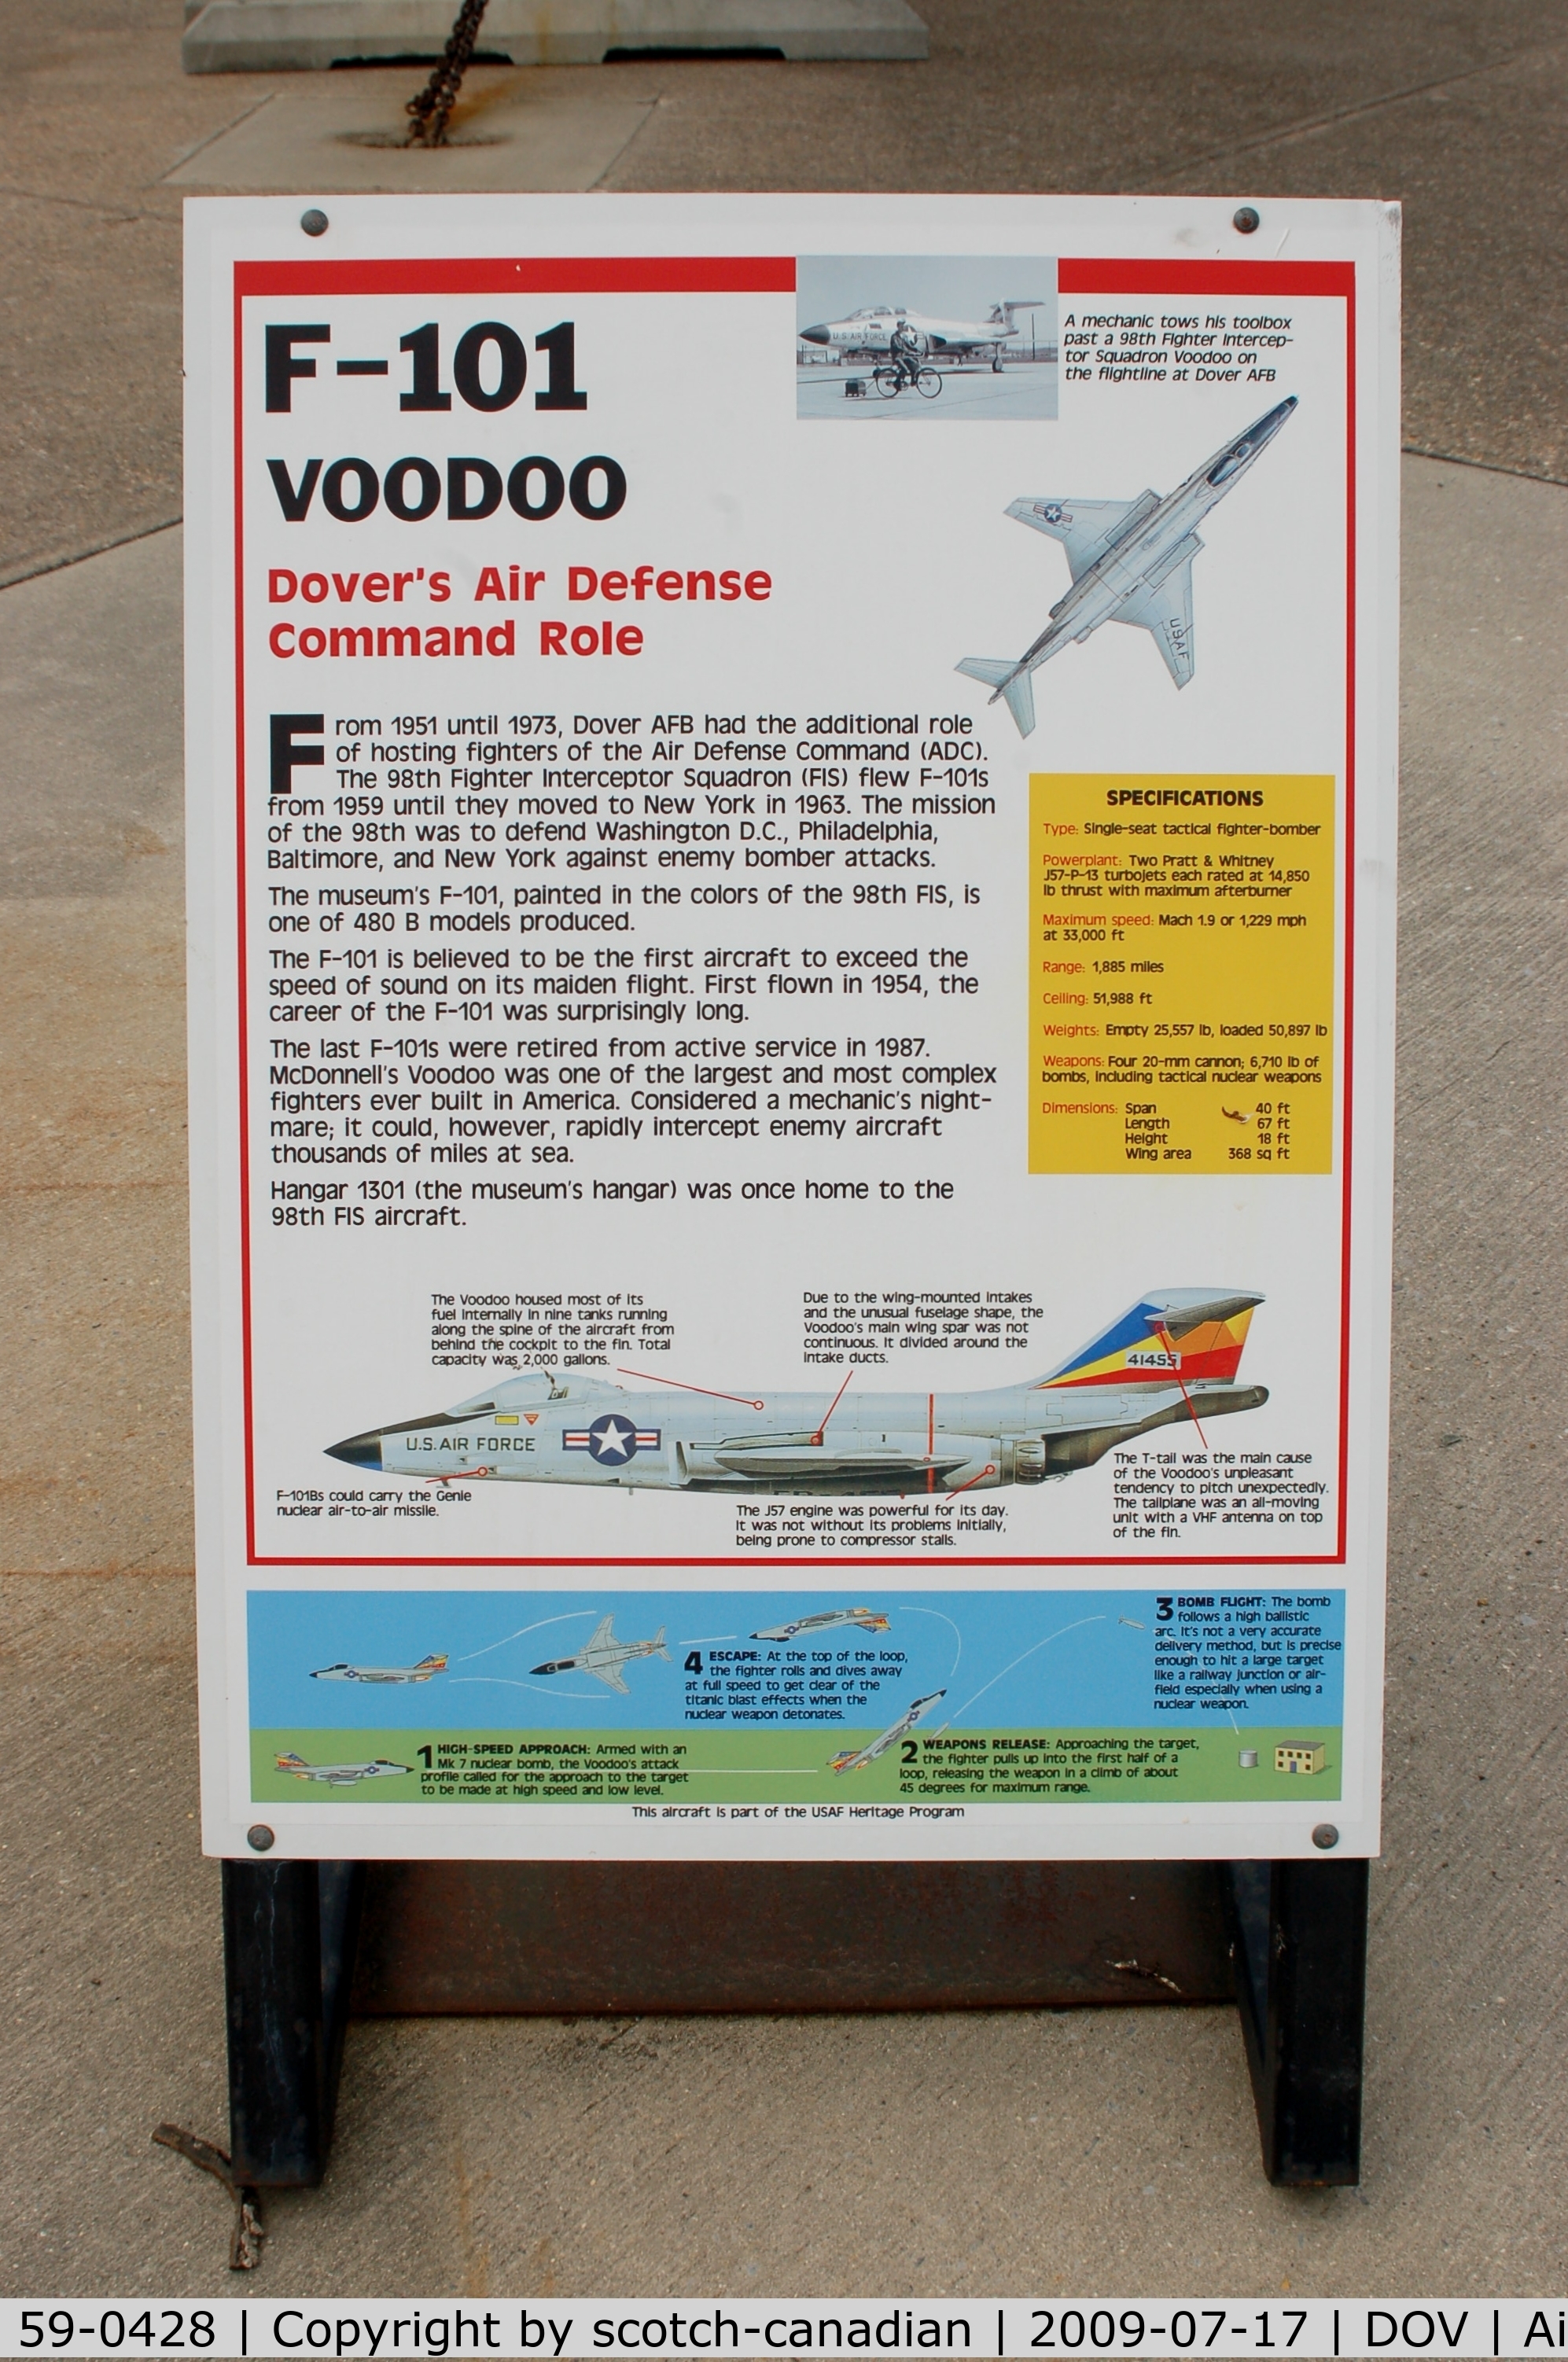 59-0428, McDonnell F-101B Voodoo C/N 752, Information Plaque for the McDonnell F-101B Voodoo at the Air Mobility Command Museum, Dover AFB, DE